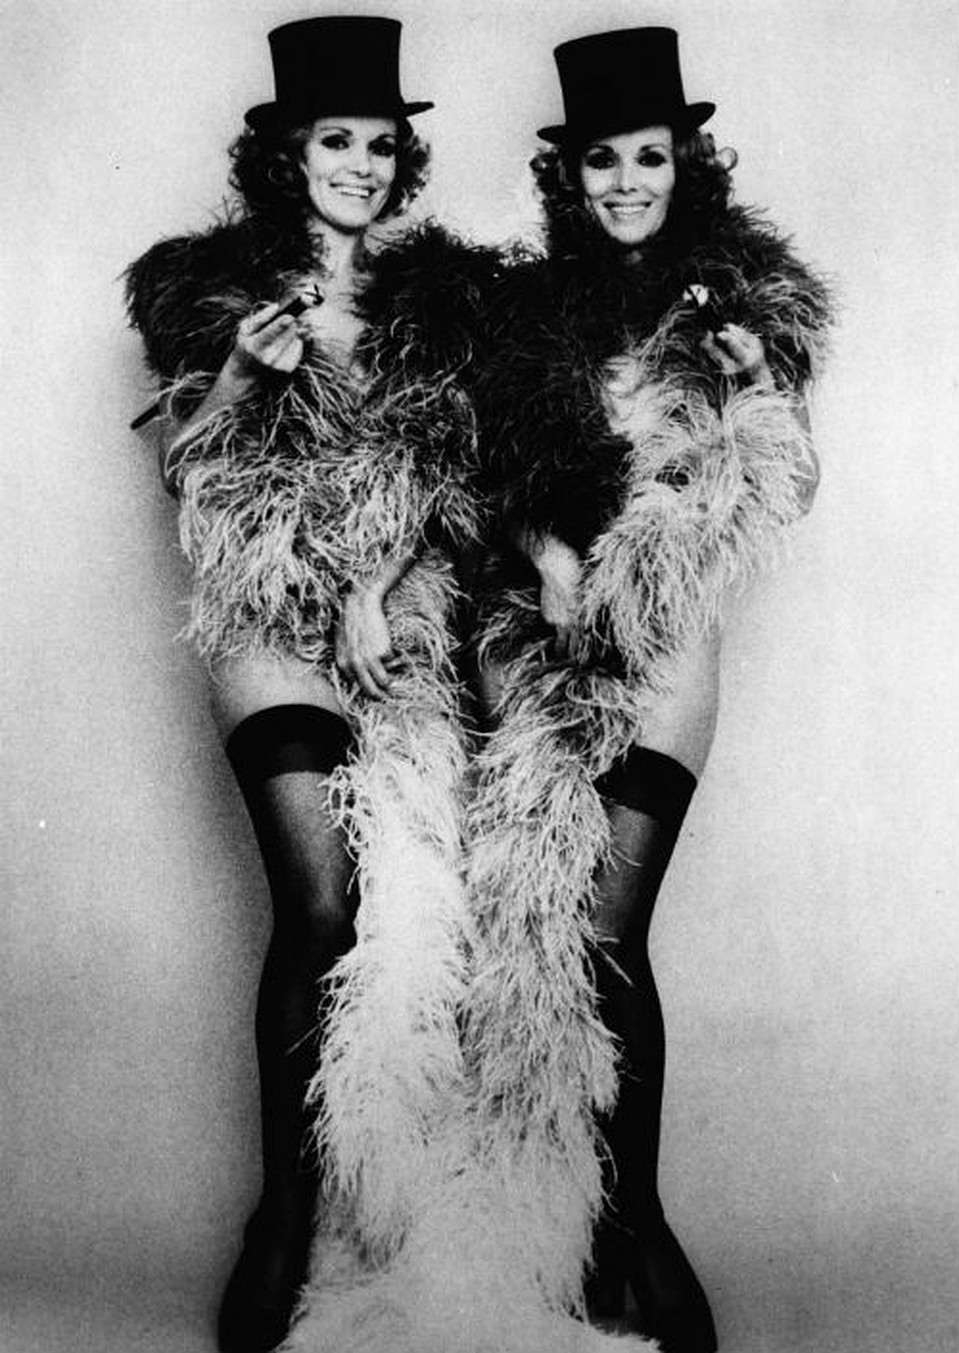 Сестры Элис и Эллен Кесслер - близняшки-артистки, популярные в Европе в 50-60-х годах прошлого столетия. Снимок 1965 года. Фото: GLOBAL LOOK PRESS